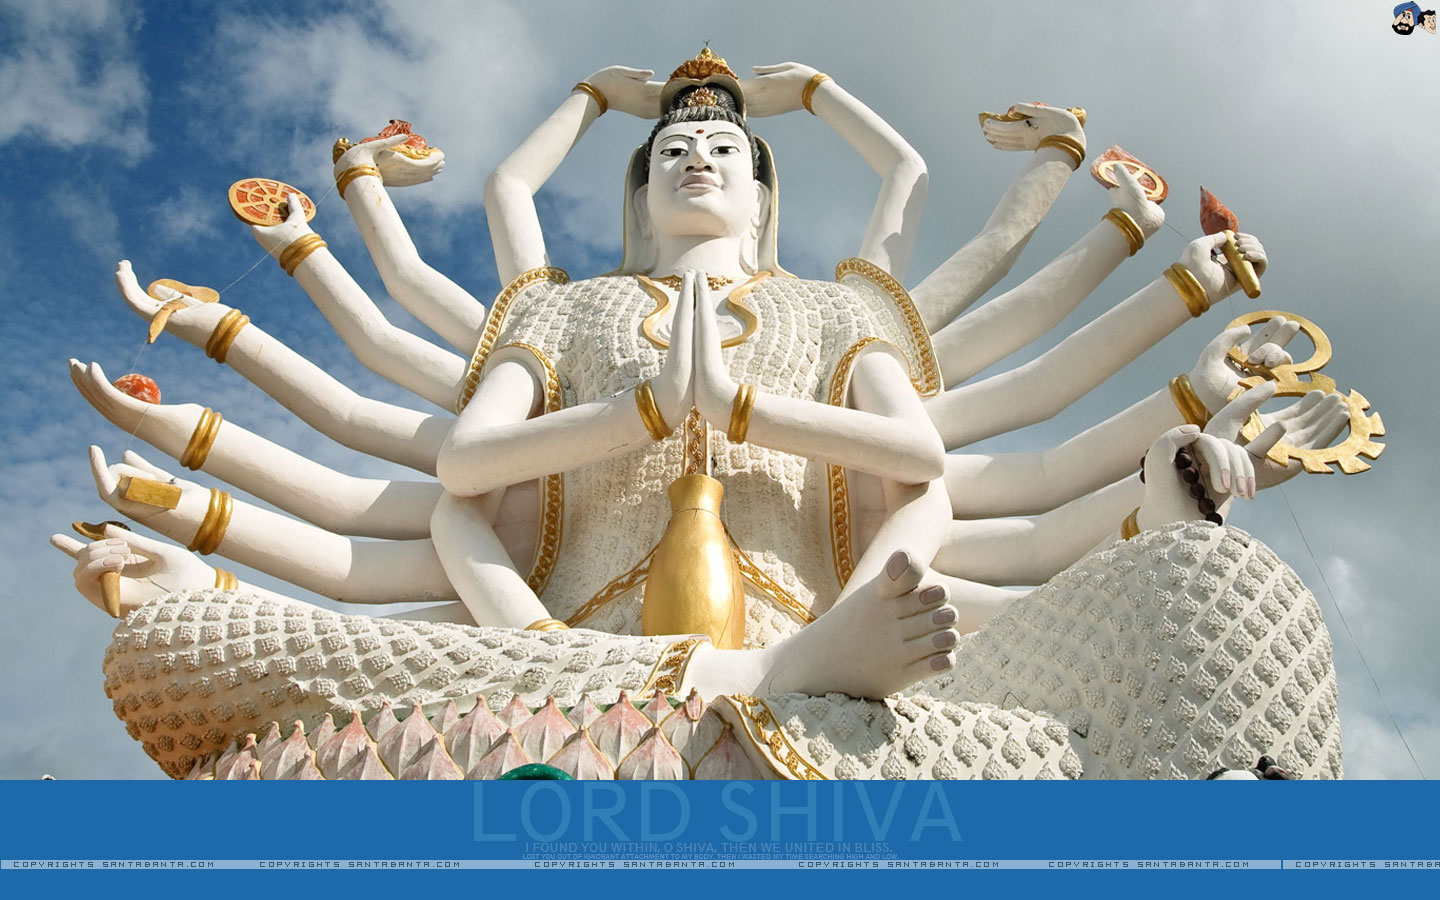 50+] 3D Shiva Wallpaper - WallpaperSafari